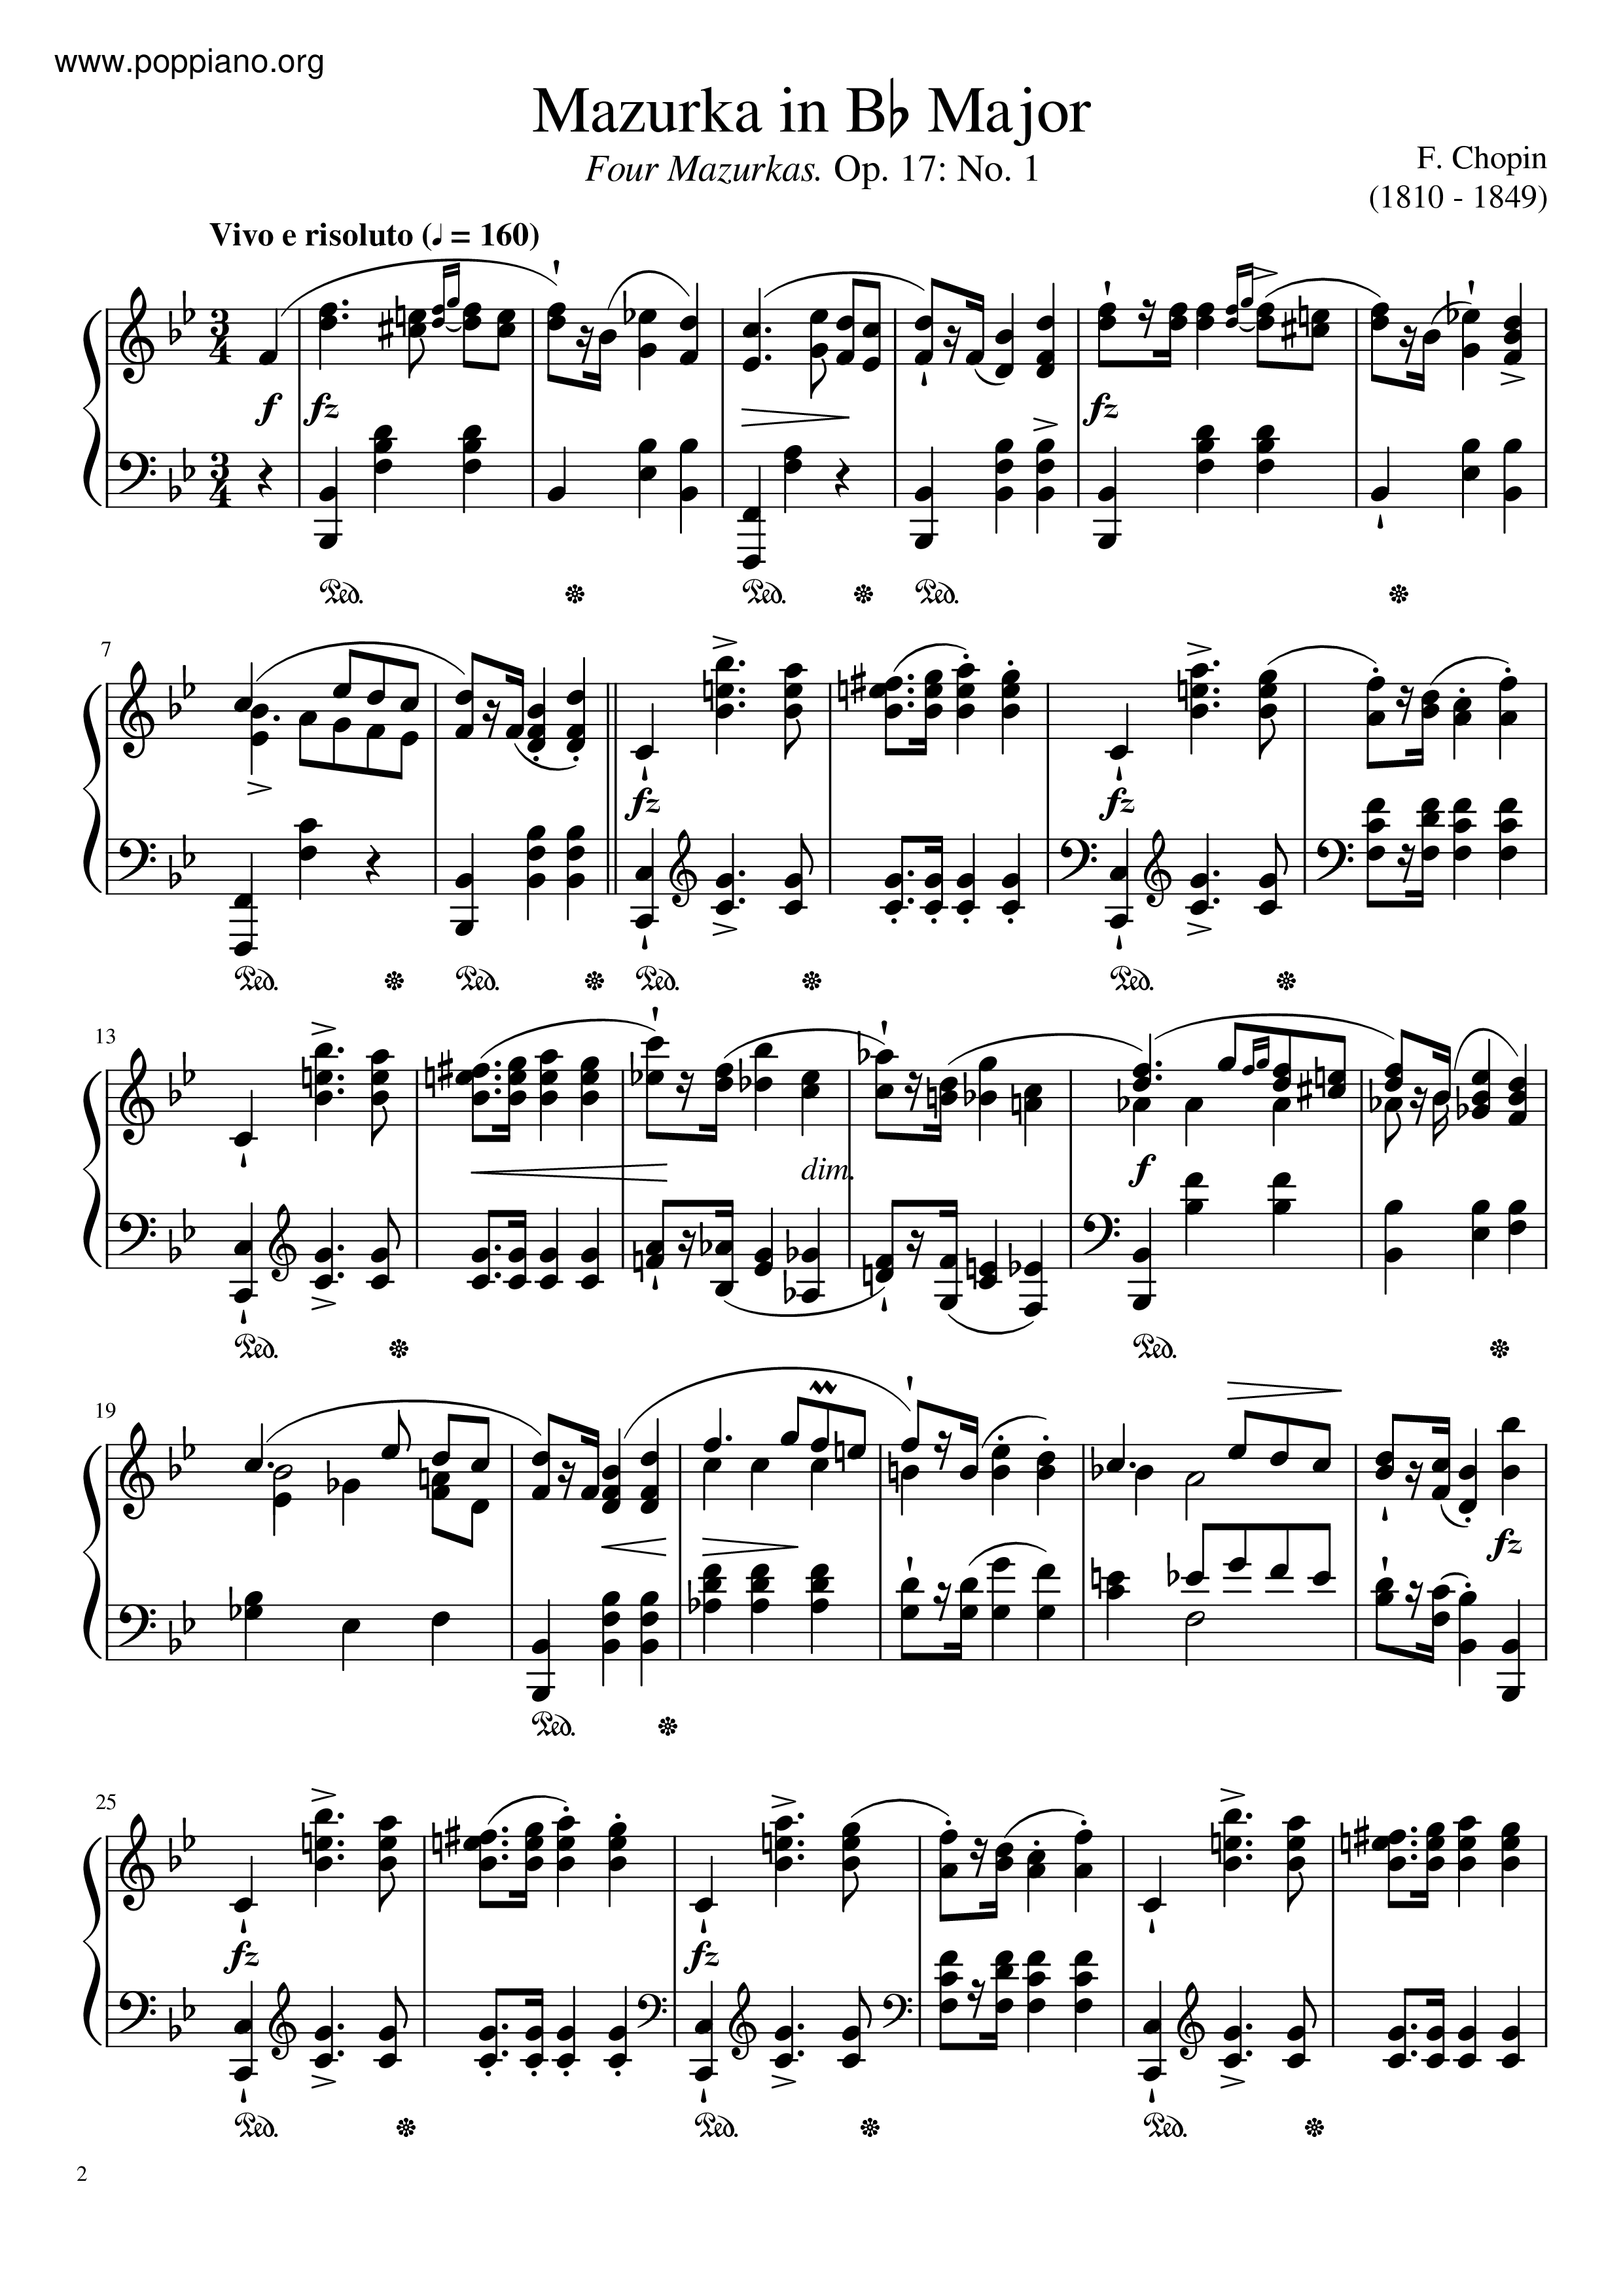 Mazurka In B-Flat Major, Op. 17 No. 1 Score